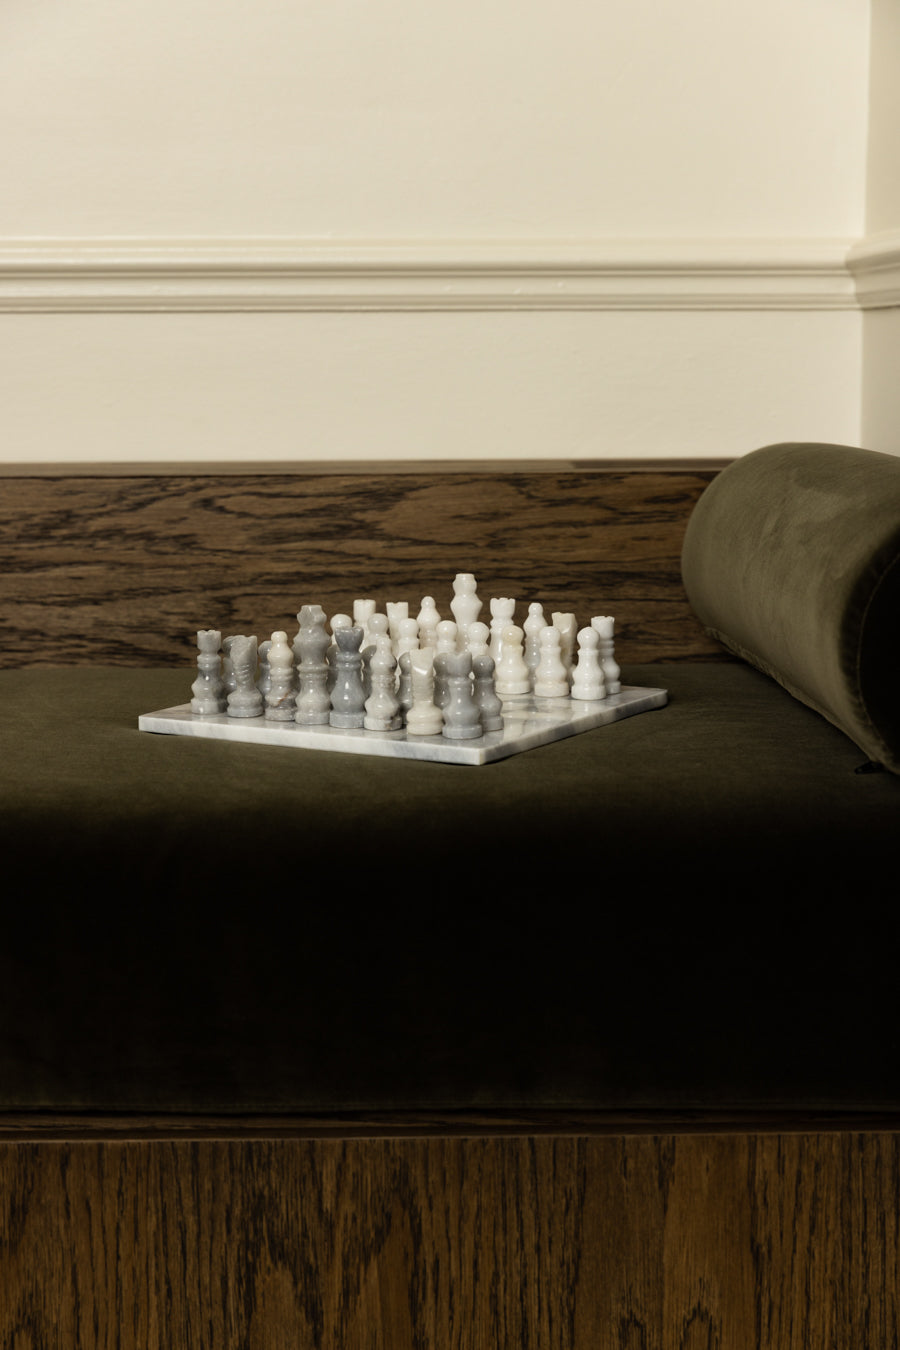 MARBLE & ONYX Chess Set - White Carrara & Grey Marble